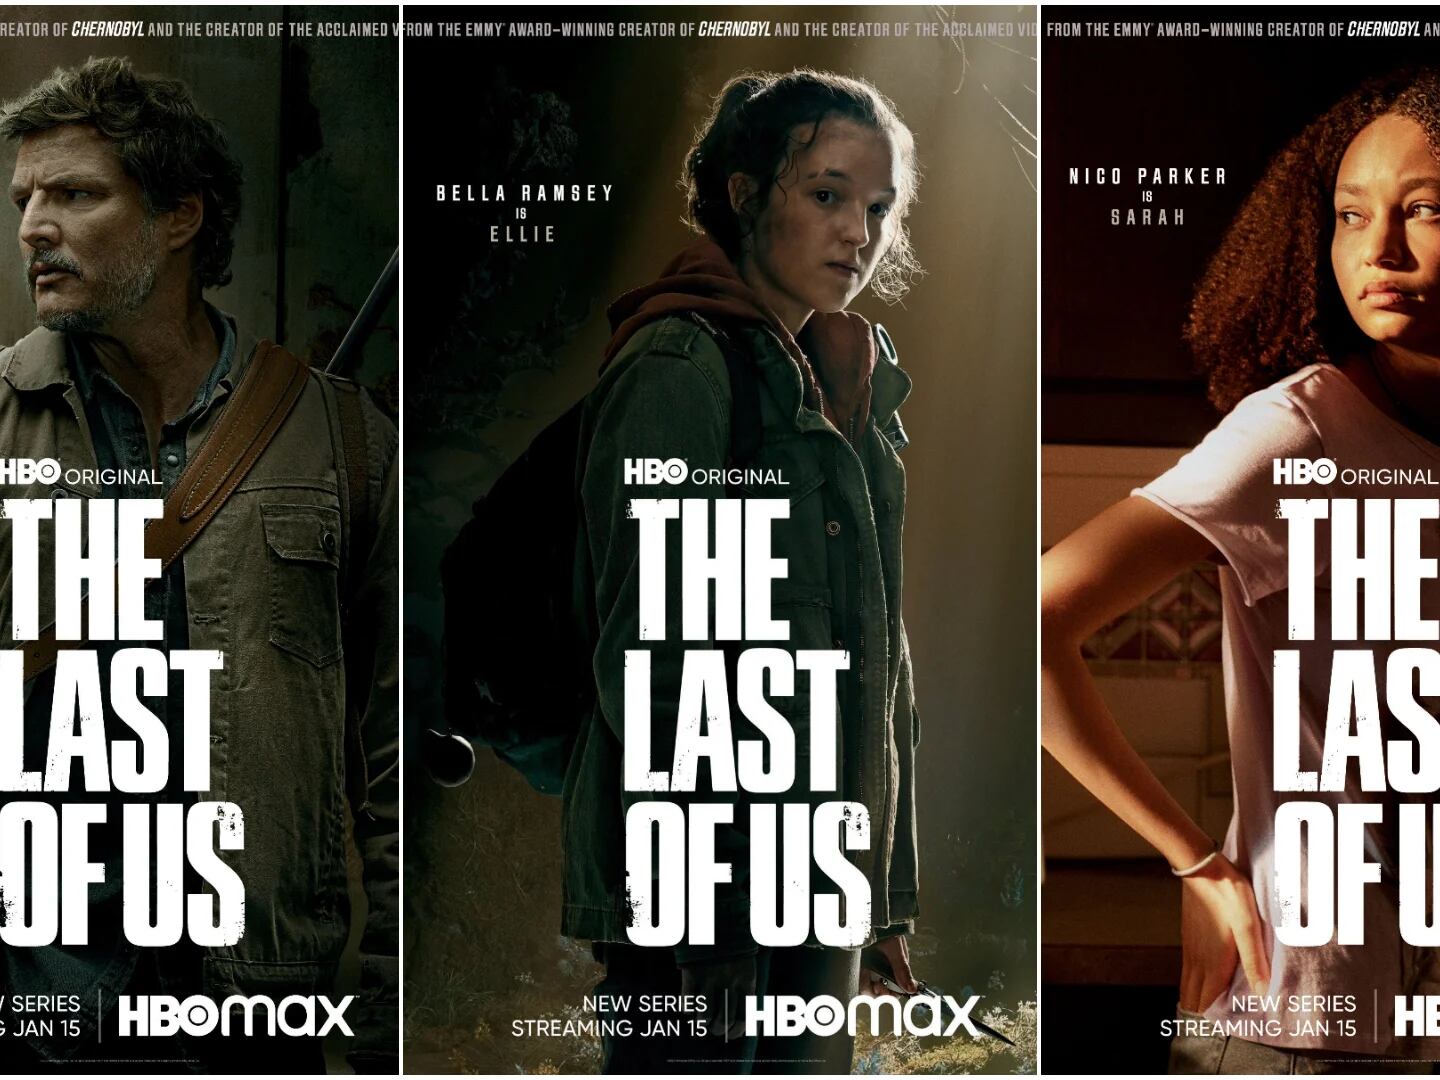 The Last of Us serie de HBO: Sarah esconde uno de los mejores easter eggs  del juego y los fans ya lo descubrieron